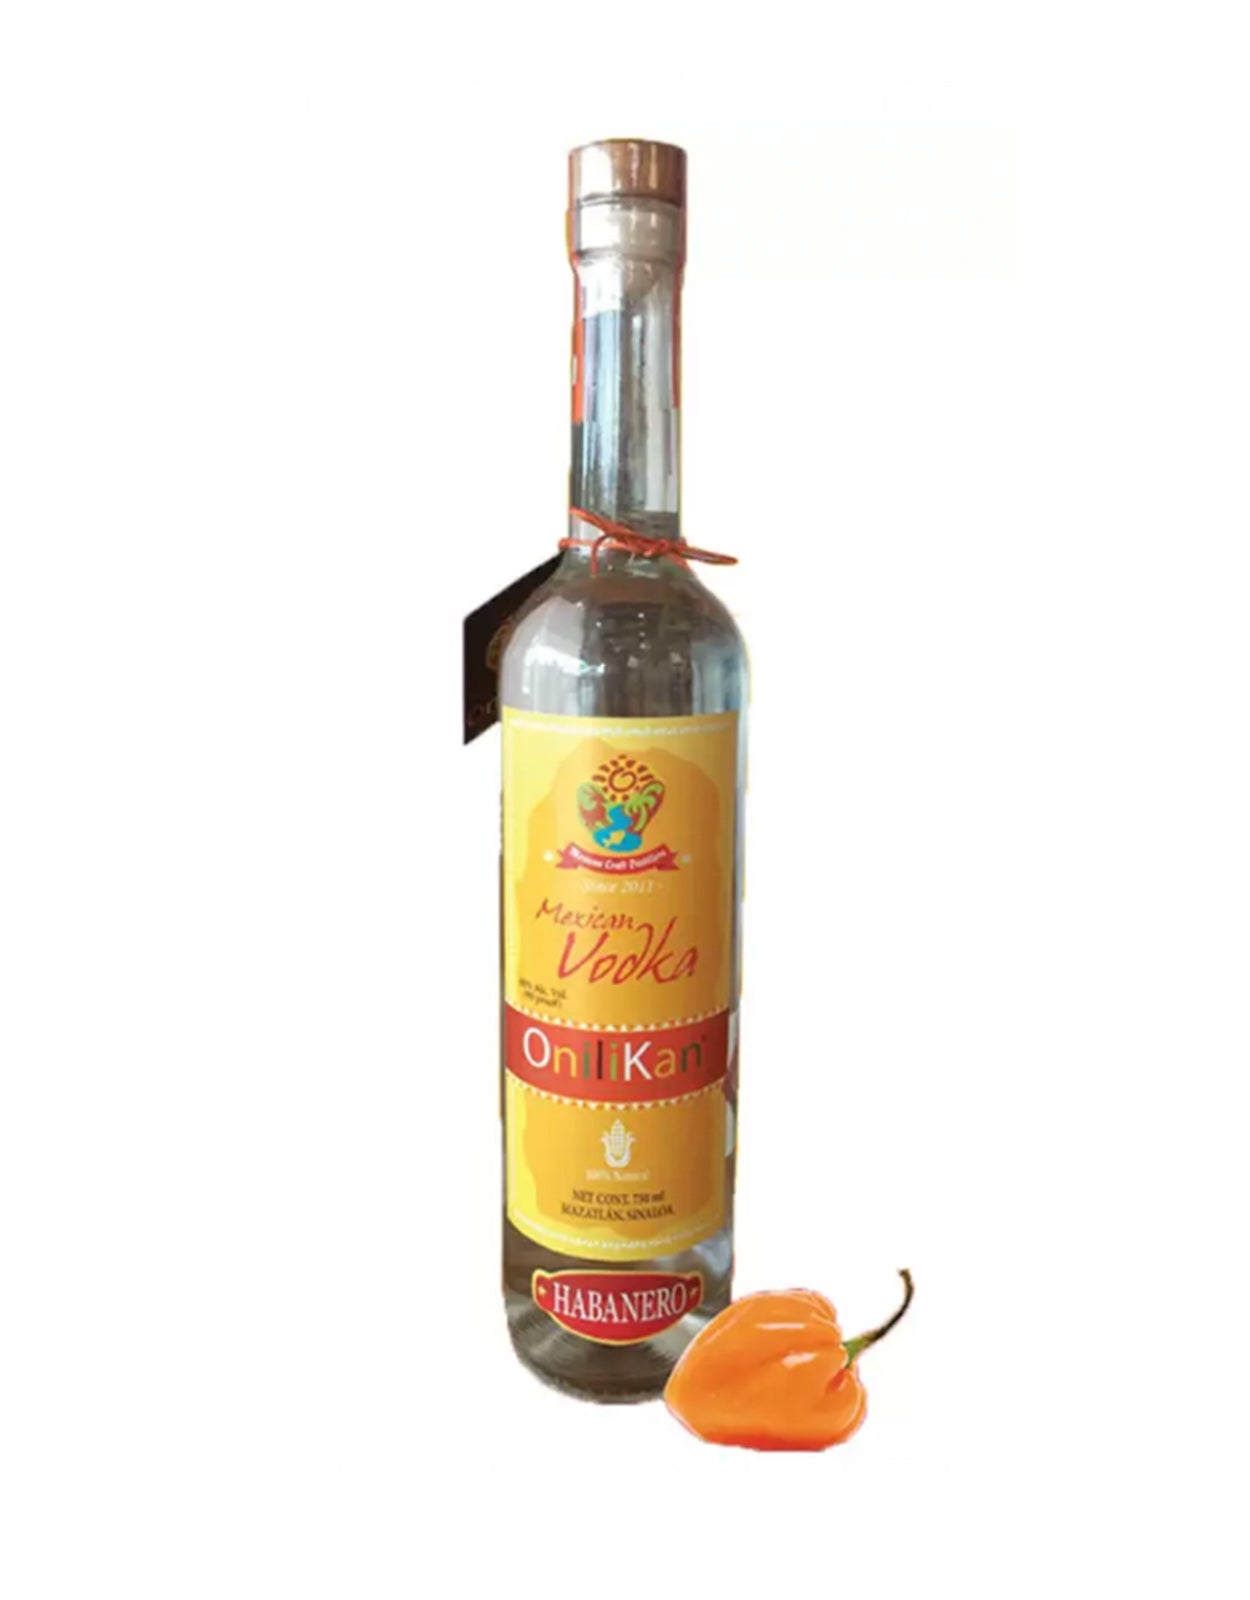 Onilikan Habanero Vodka